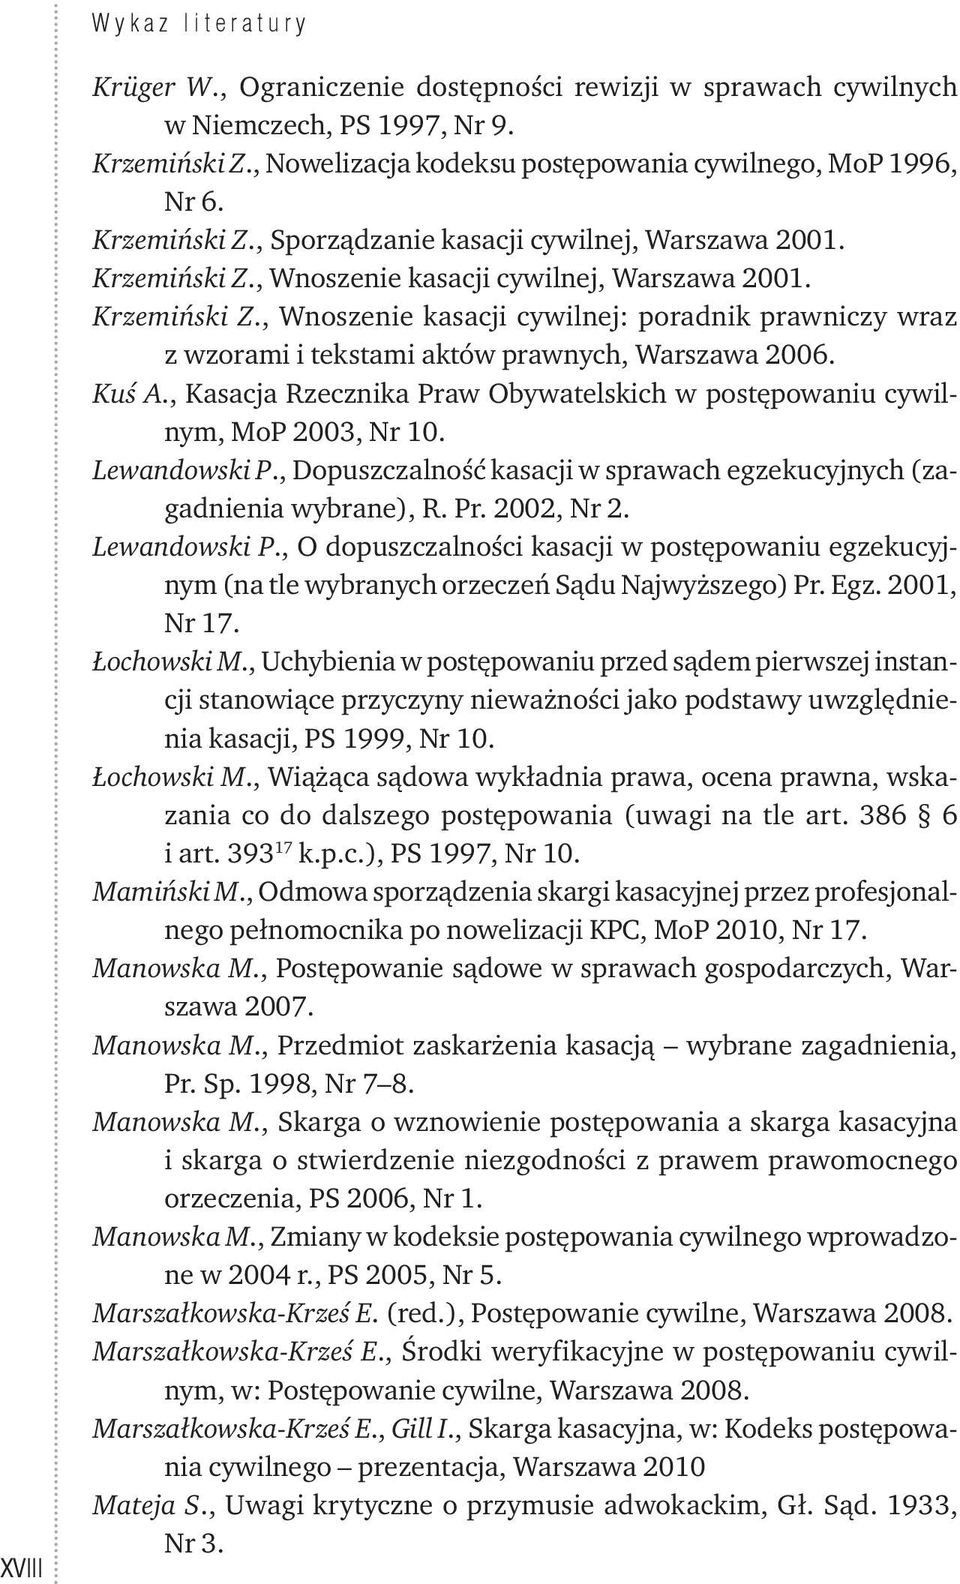 Kuś A., Kasacja Rzecznika Praw Obywatelskich w postępowaniu cywilnym, MoP 2003, Nr 10. Lewandowski P., Dopuszczalność kasacji w sprawach egzekucyjnych (zagadnienia wybrane), R. Pr. 2002, Nr 2.